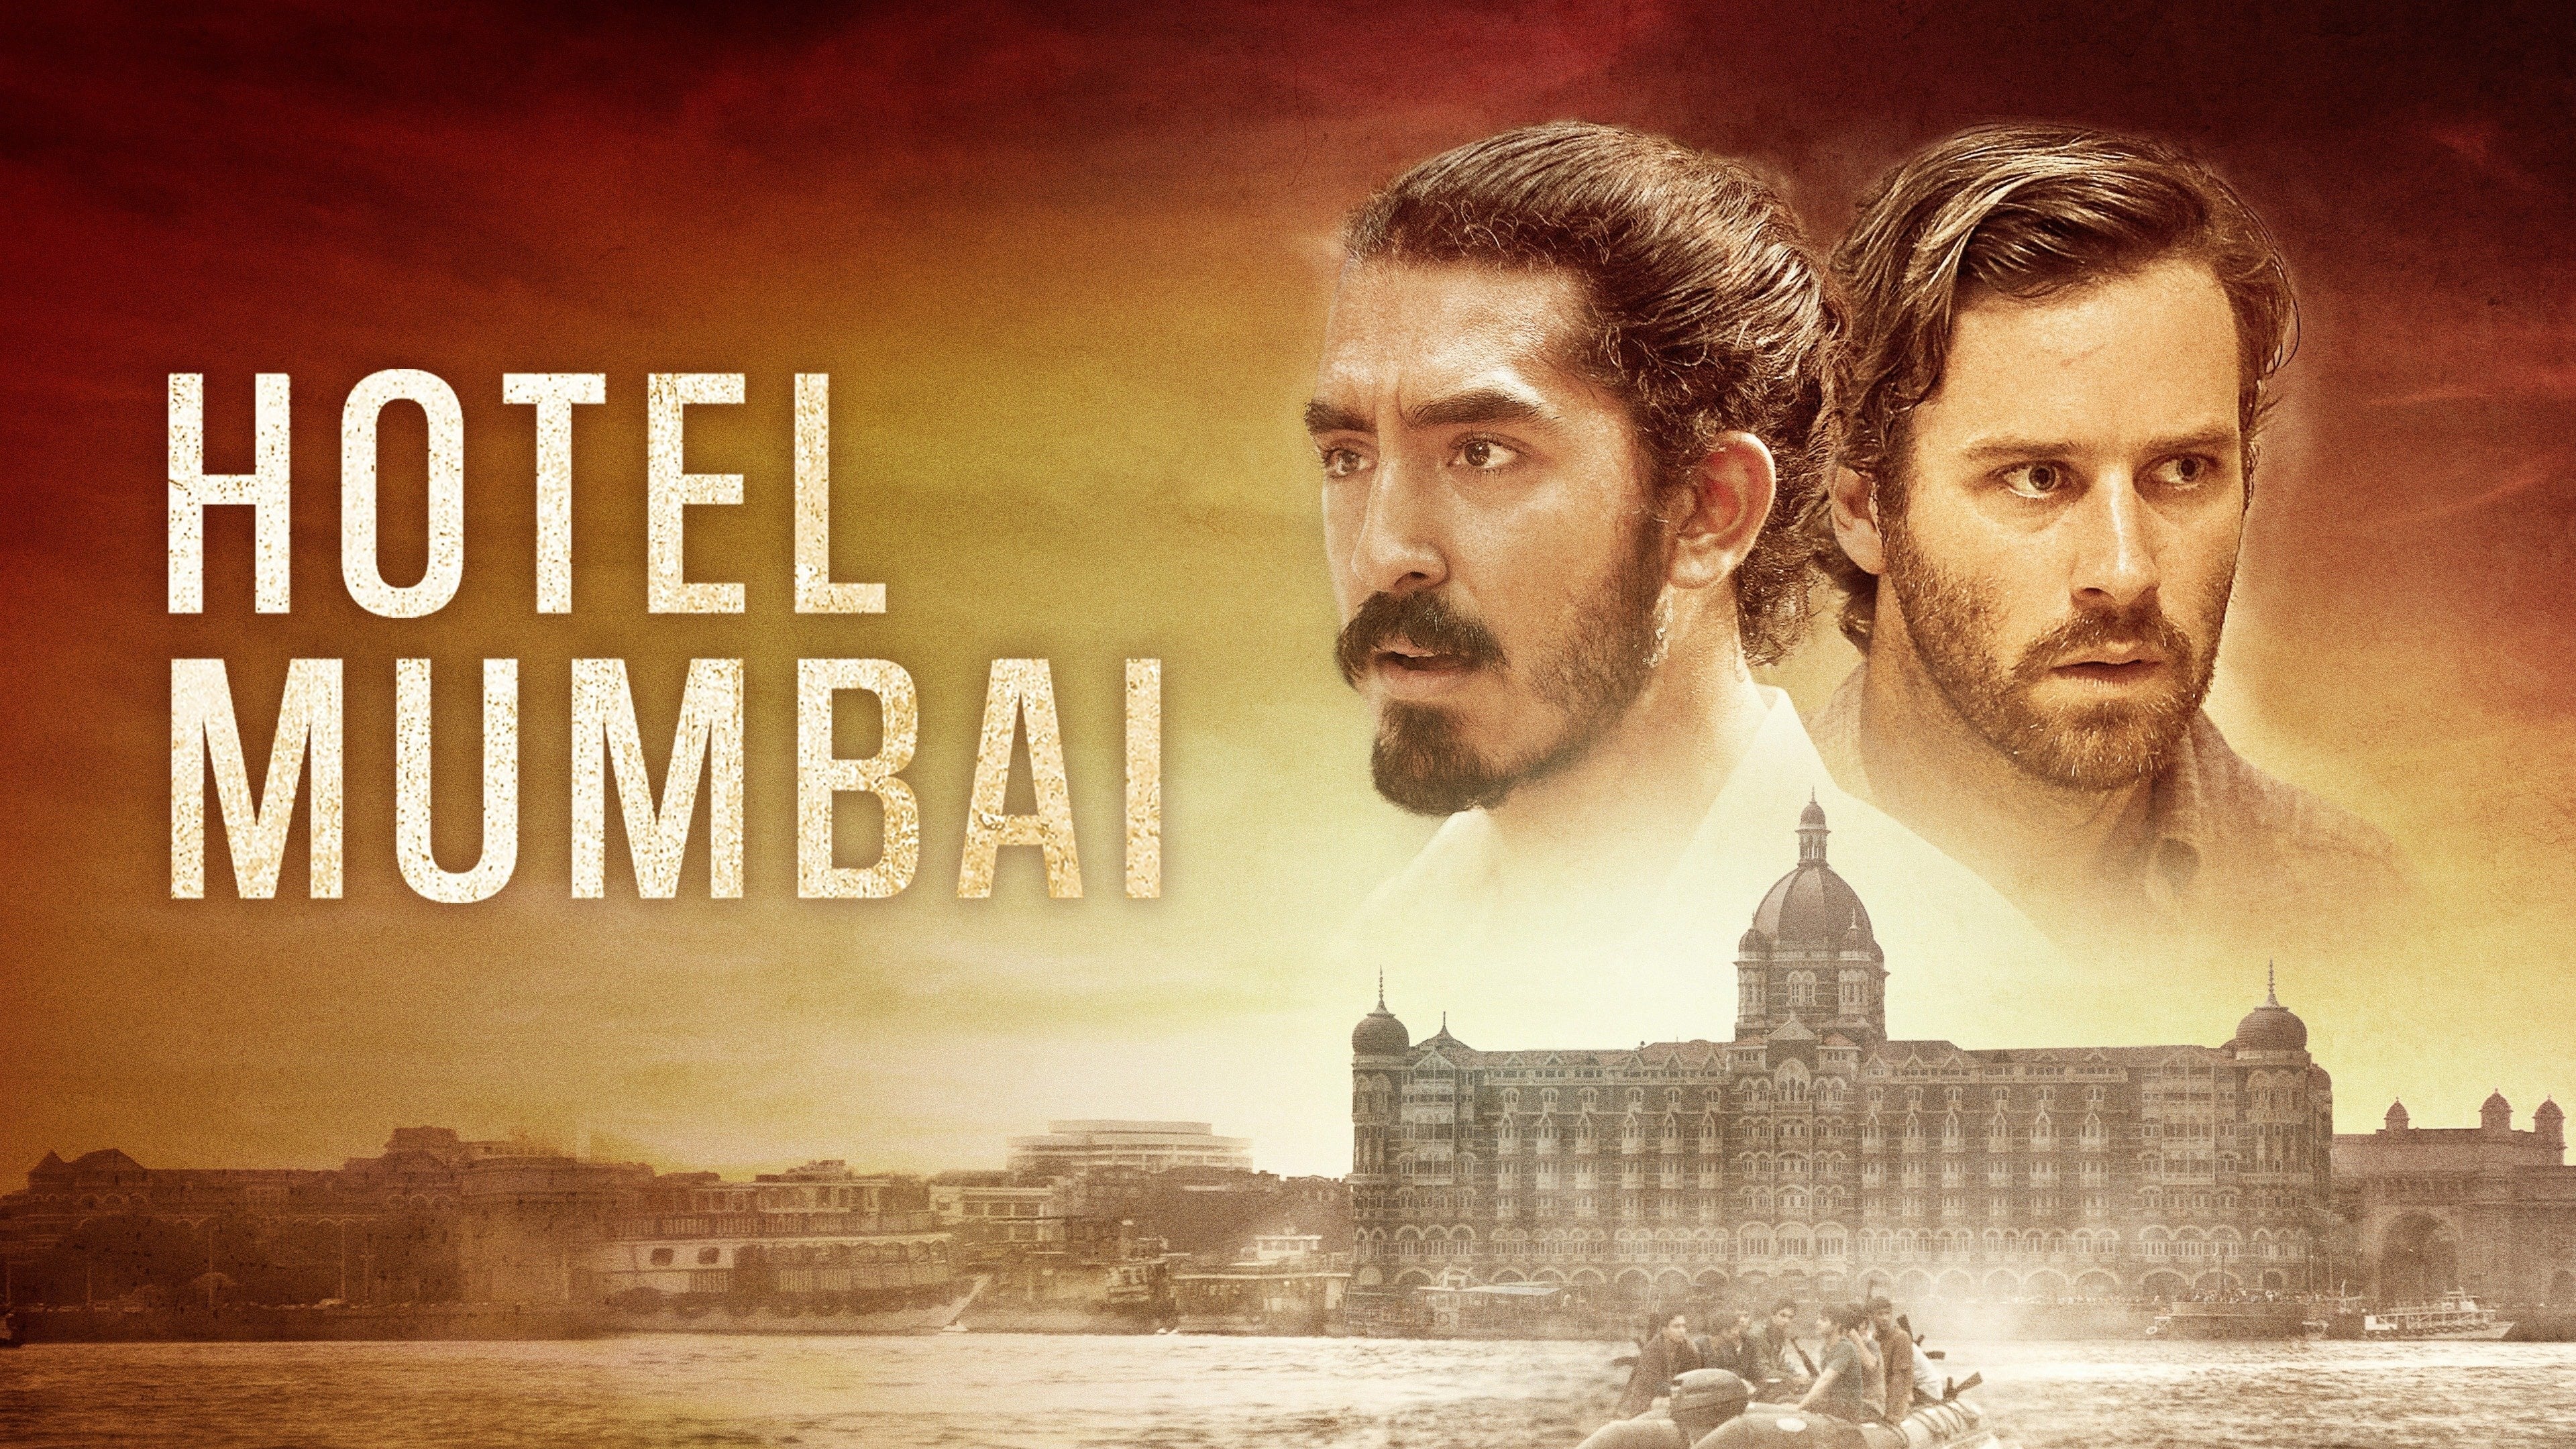 Watch Hotel Mumbai 2019 Full Movie Online Free Cinefox